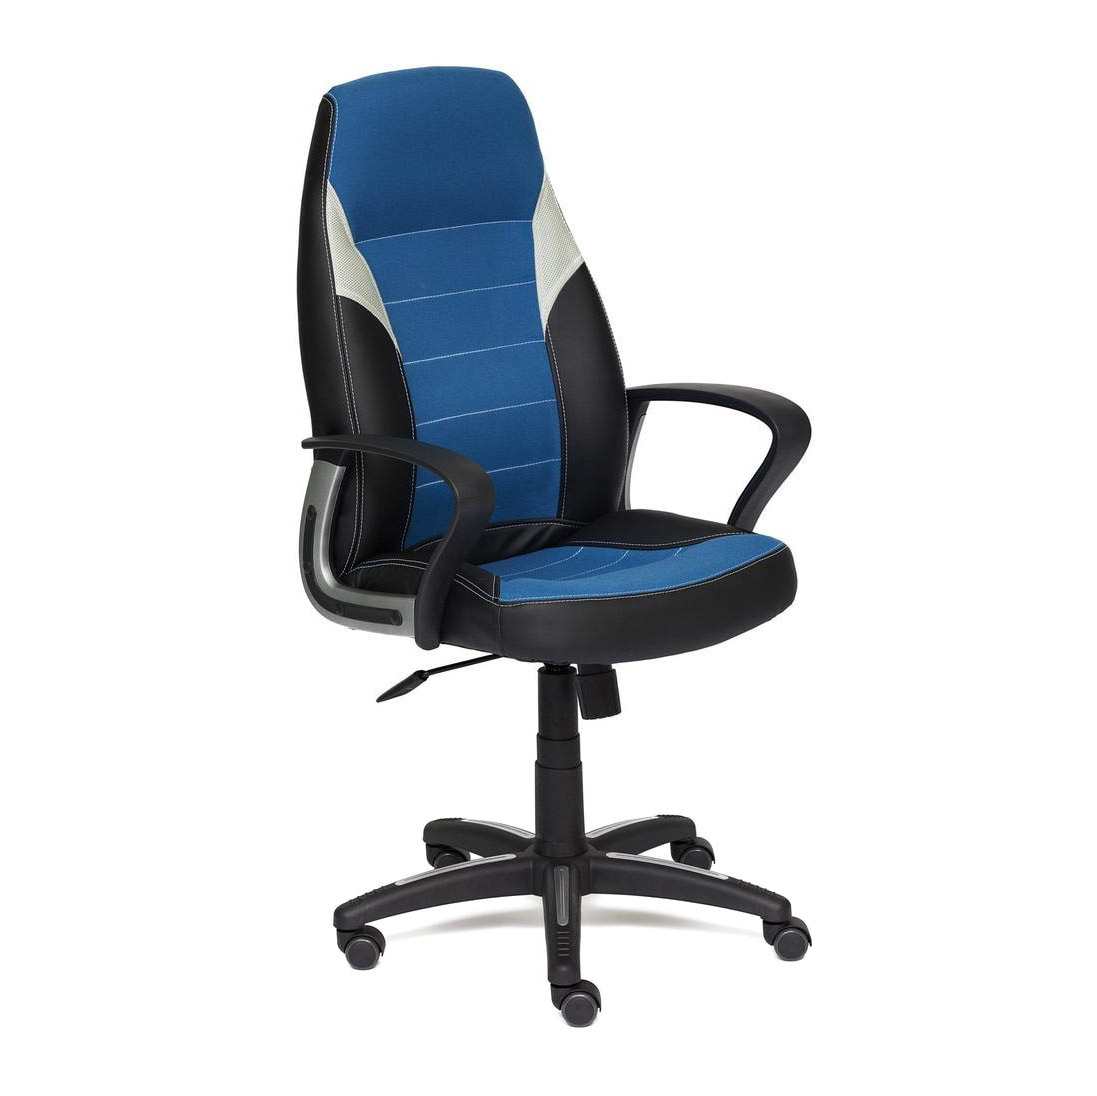 Кресло компьютерное TC синий 131х65х48 см офисное кресло с поддержкой спинки кожаное современное кресло с колесами многофункциональное эргономичное кресло из кожи офисная мебель